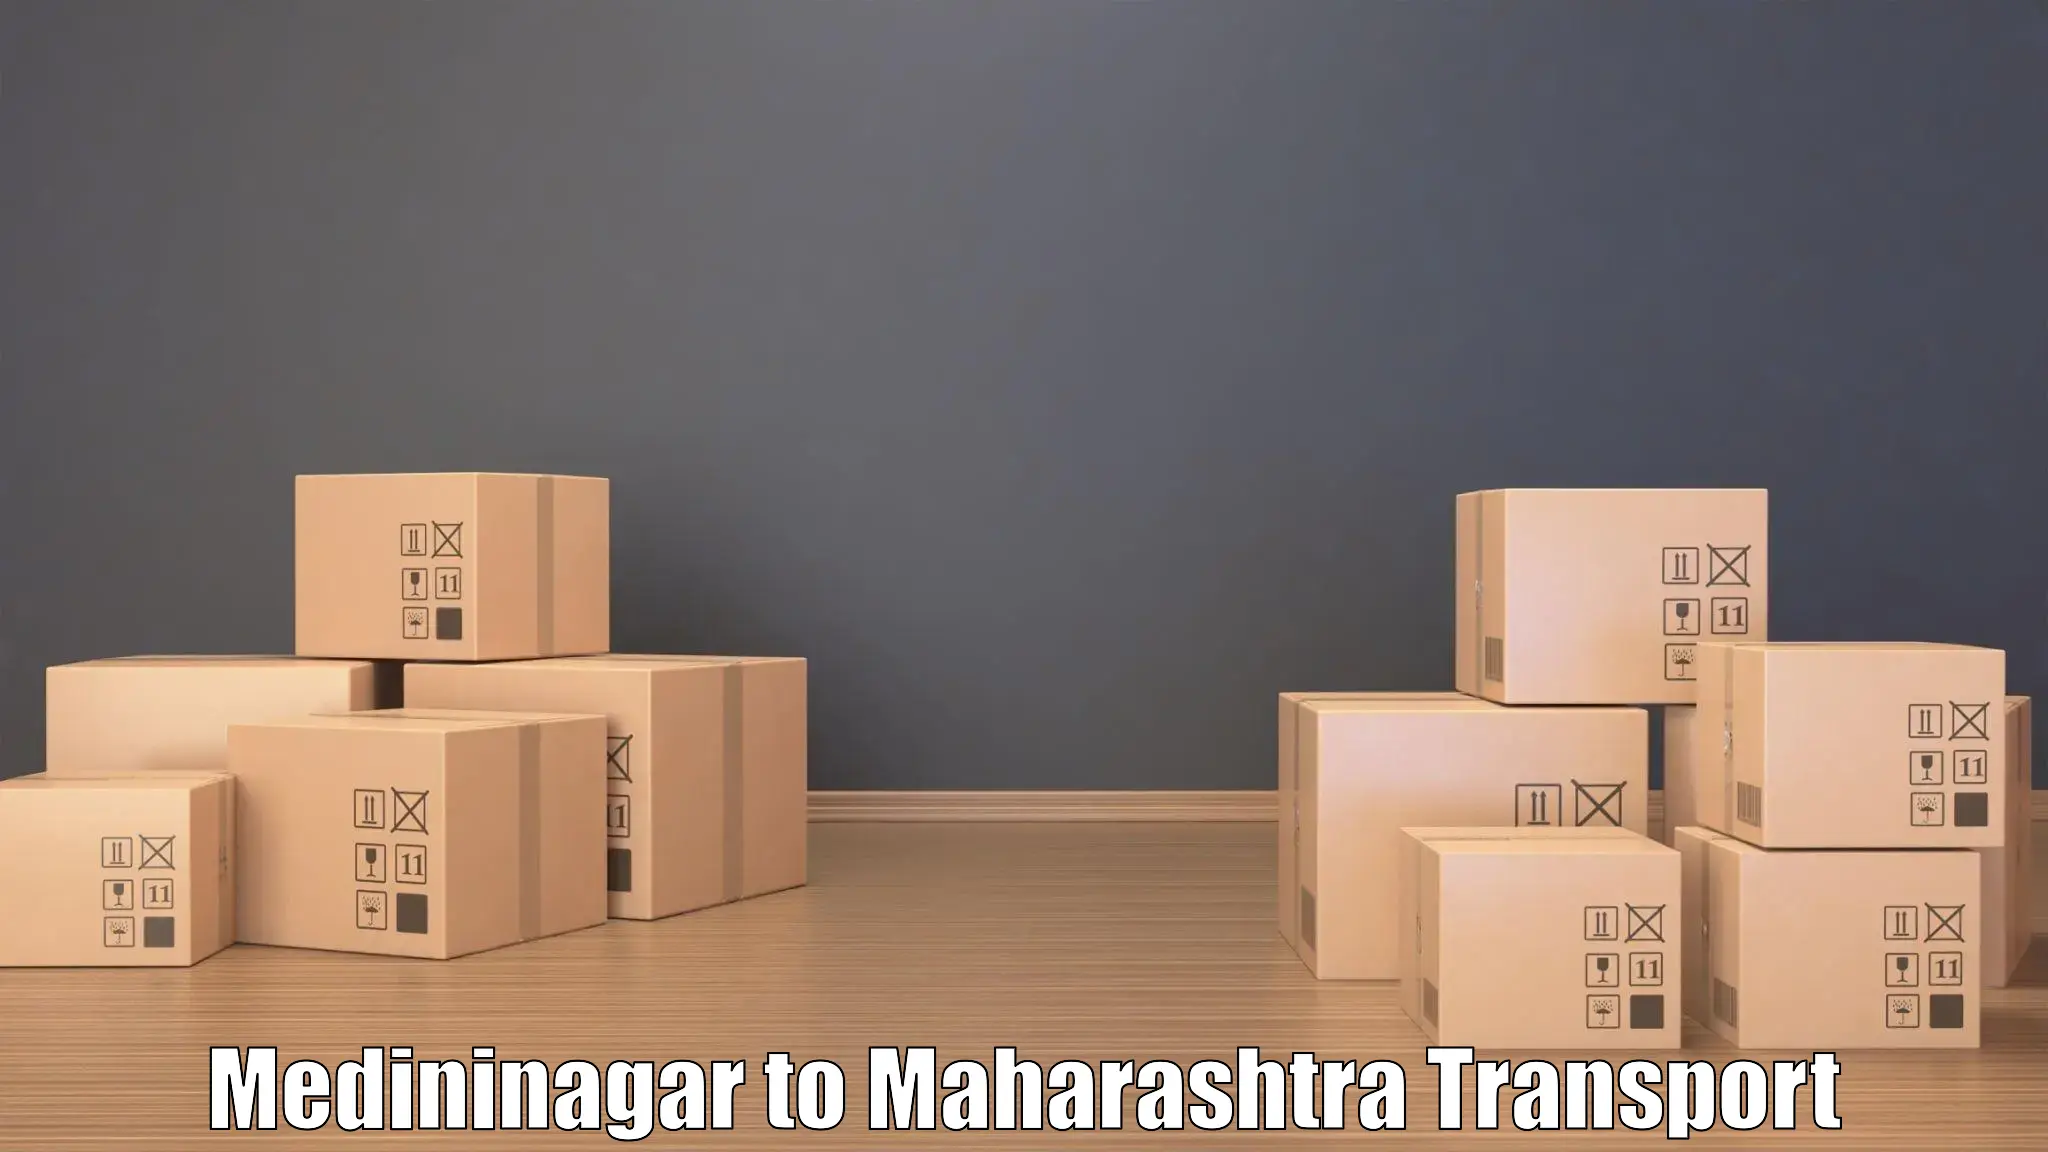 Container transport service in Medininagar to Nira